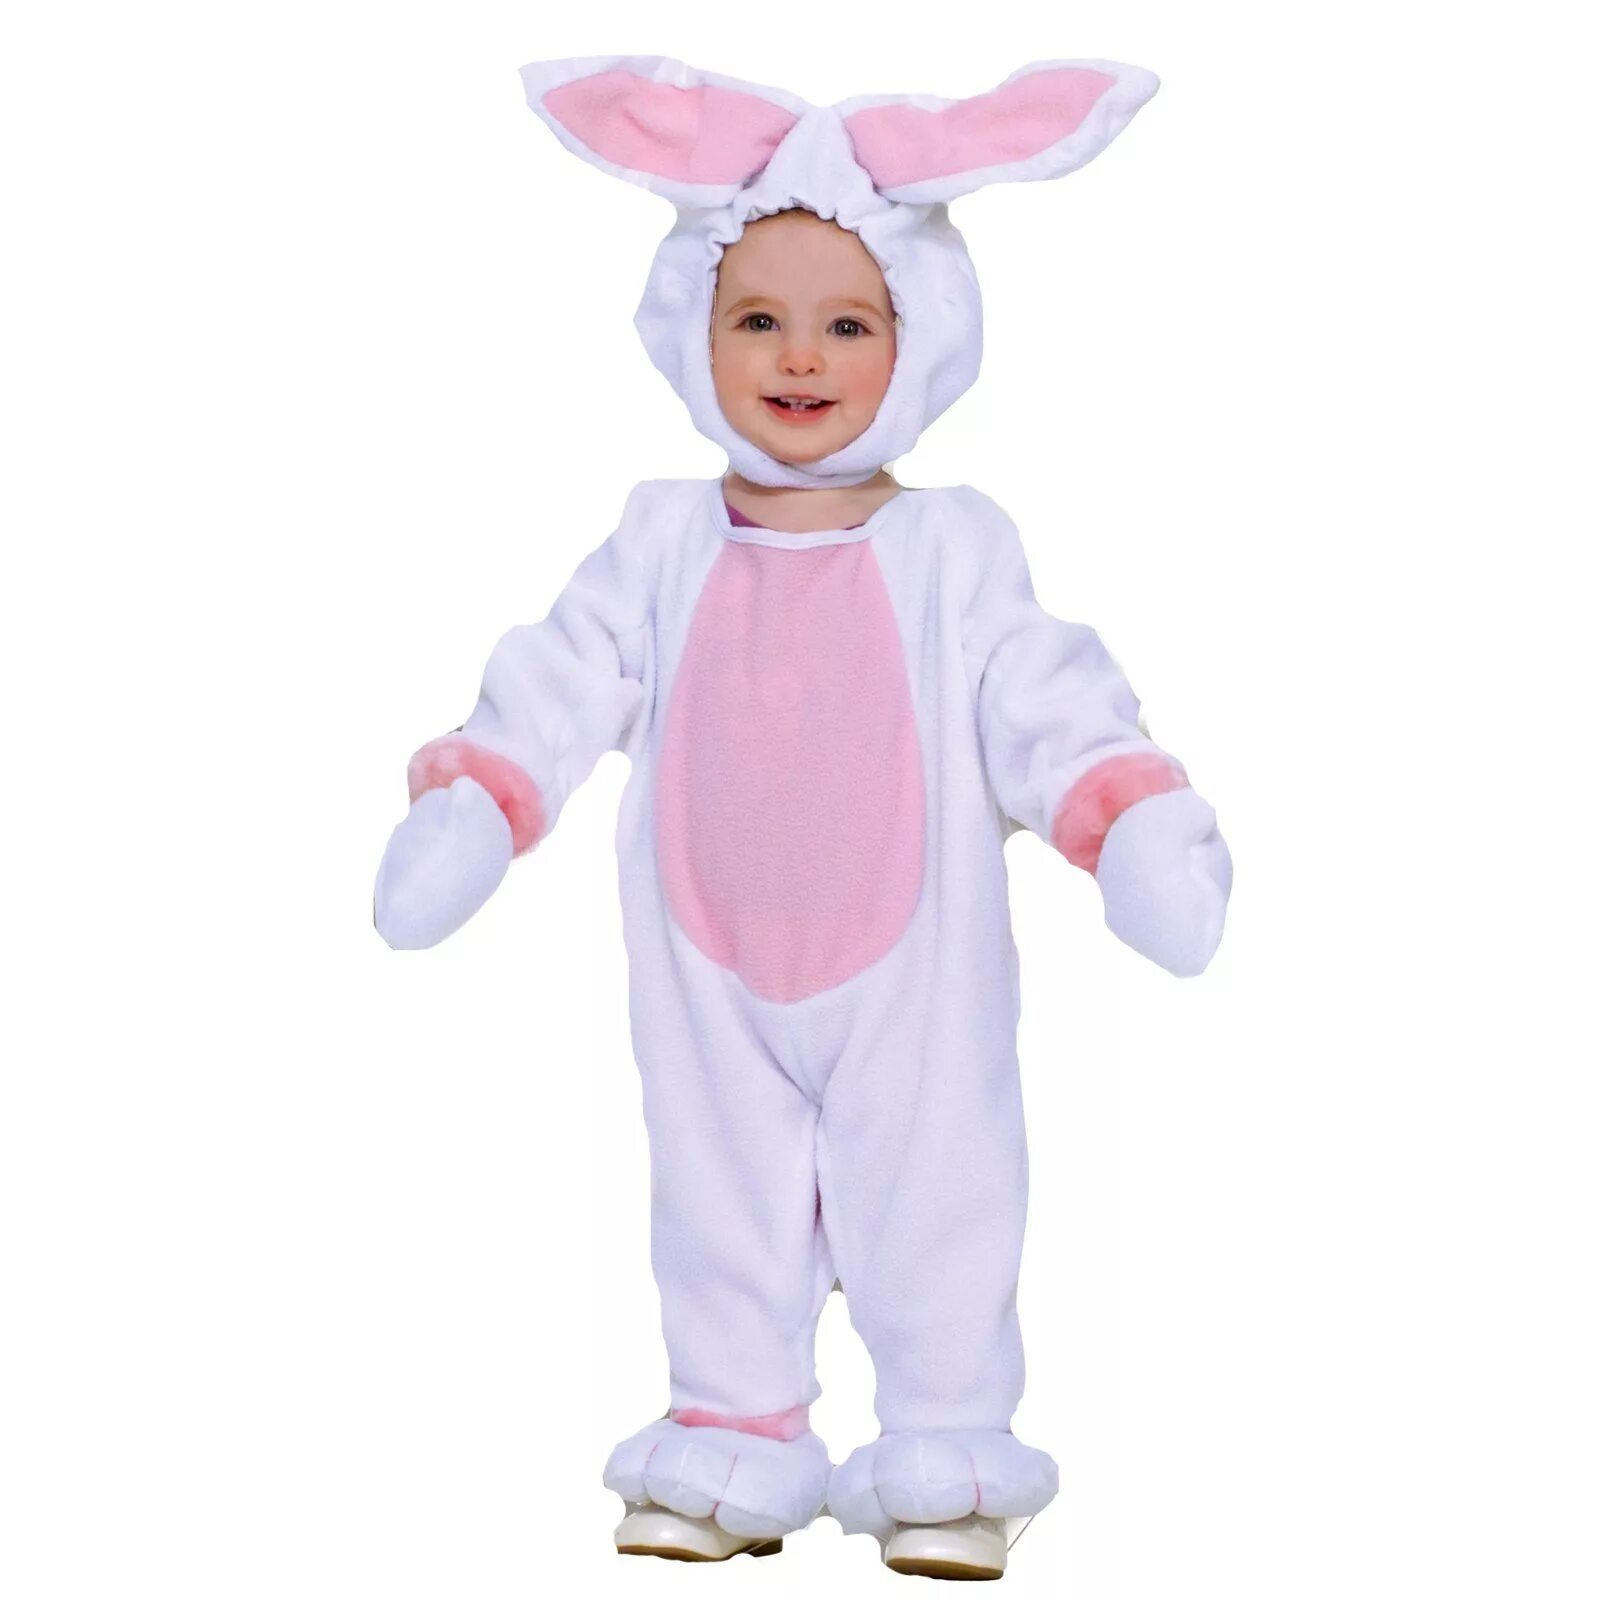 Девочка в костюме зайки. Костюм зайчика. Костюм зайца детский. Ребёнок в костюме зайчика. Ребенок в костюме зайца.